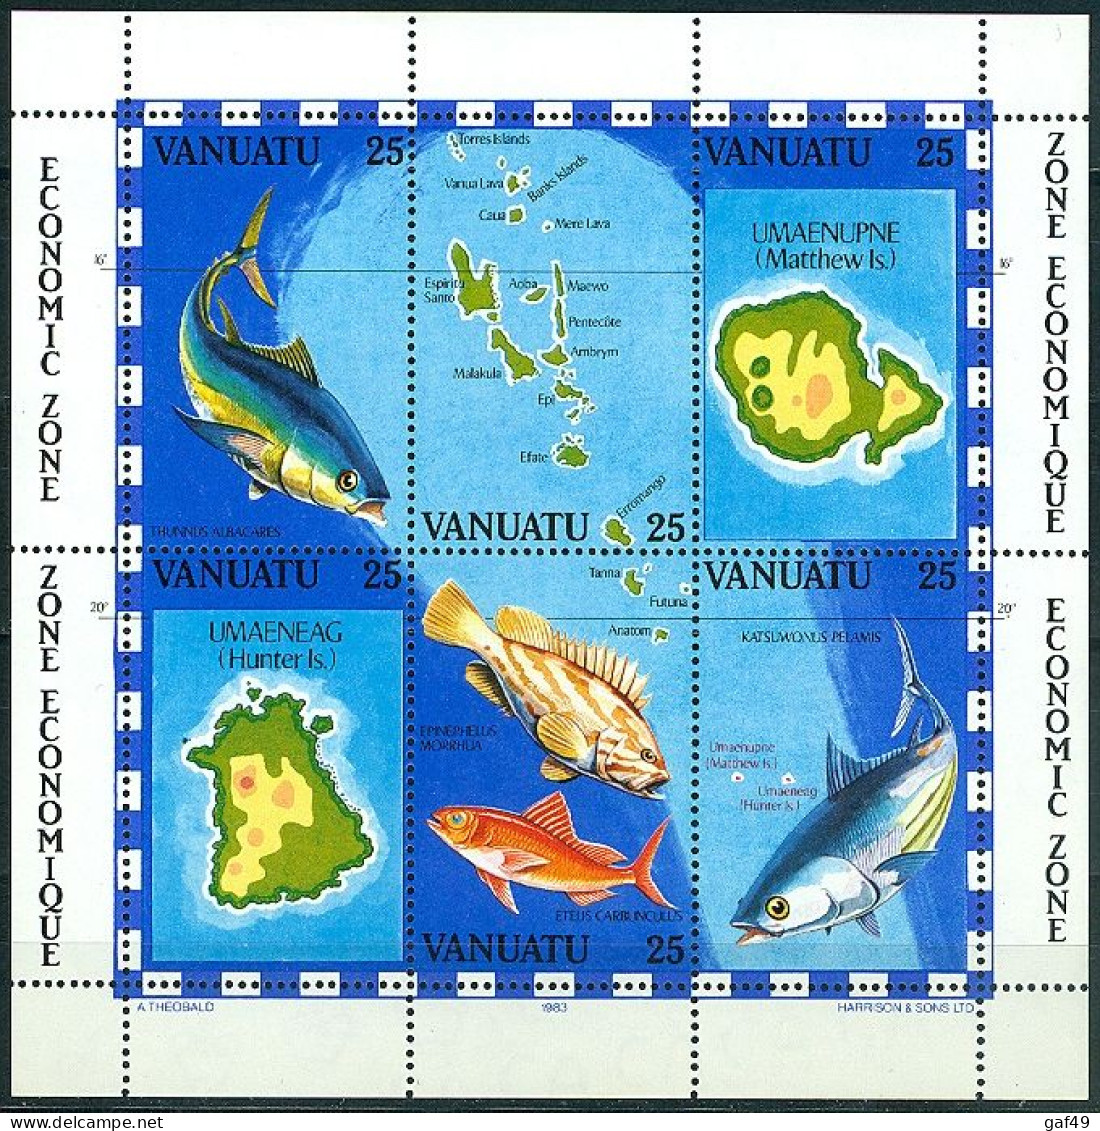 Vanuatu, La Pèche Poissons Et Cartes, Bloc Feuillet N° 4 Y&T Neufs Sans Charnière Très Frais - Vanuatu (1980-...)